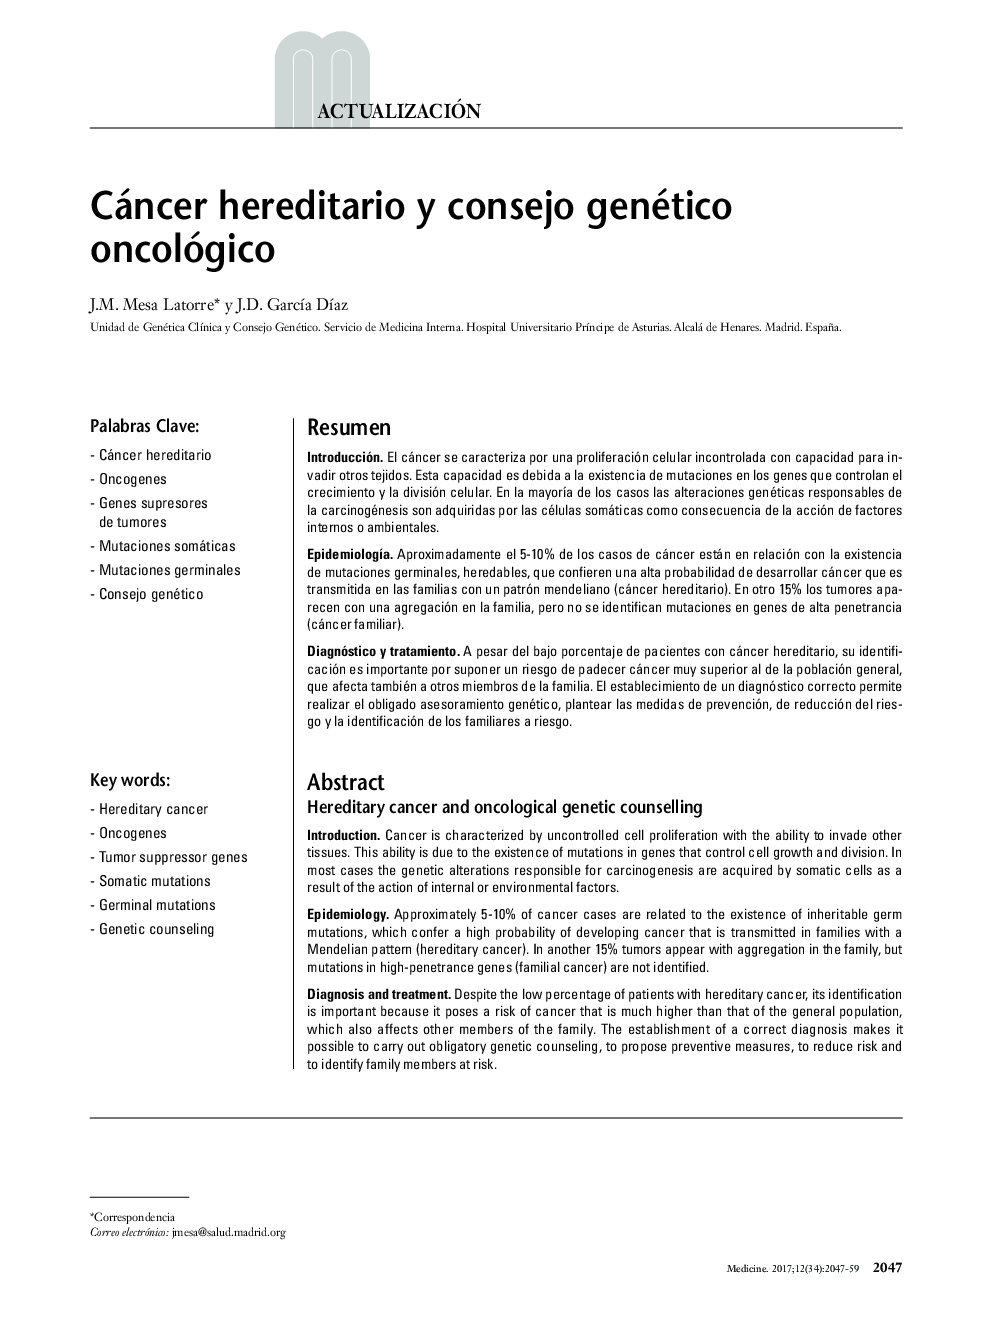 Cáncer hereditario y consejo genético oncológico